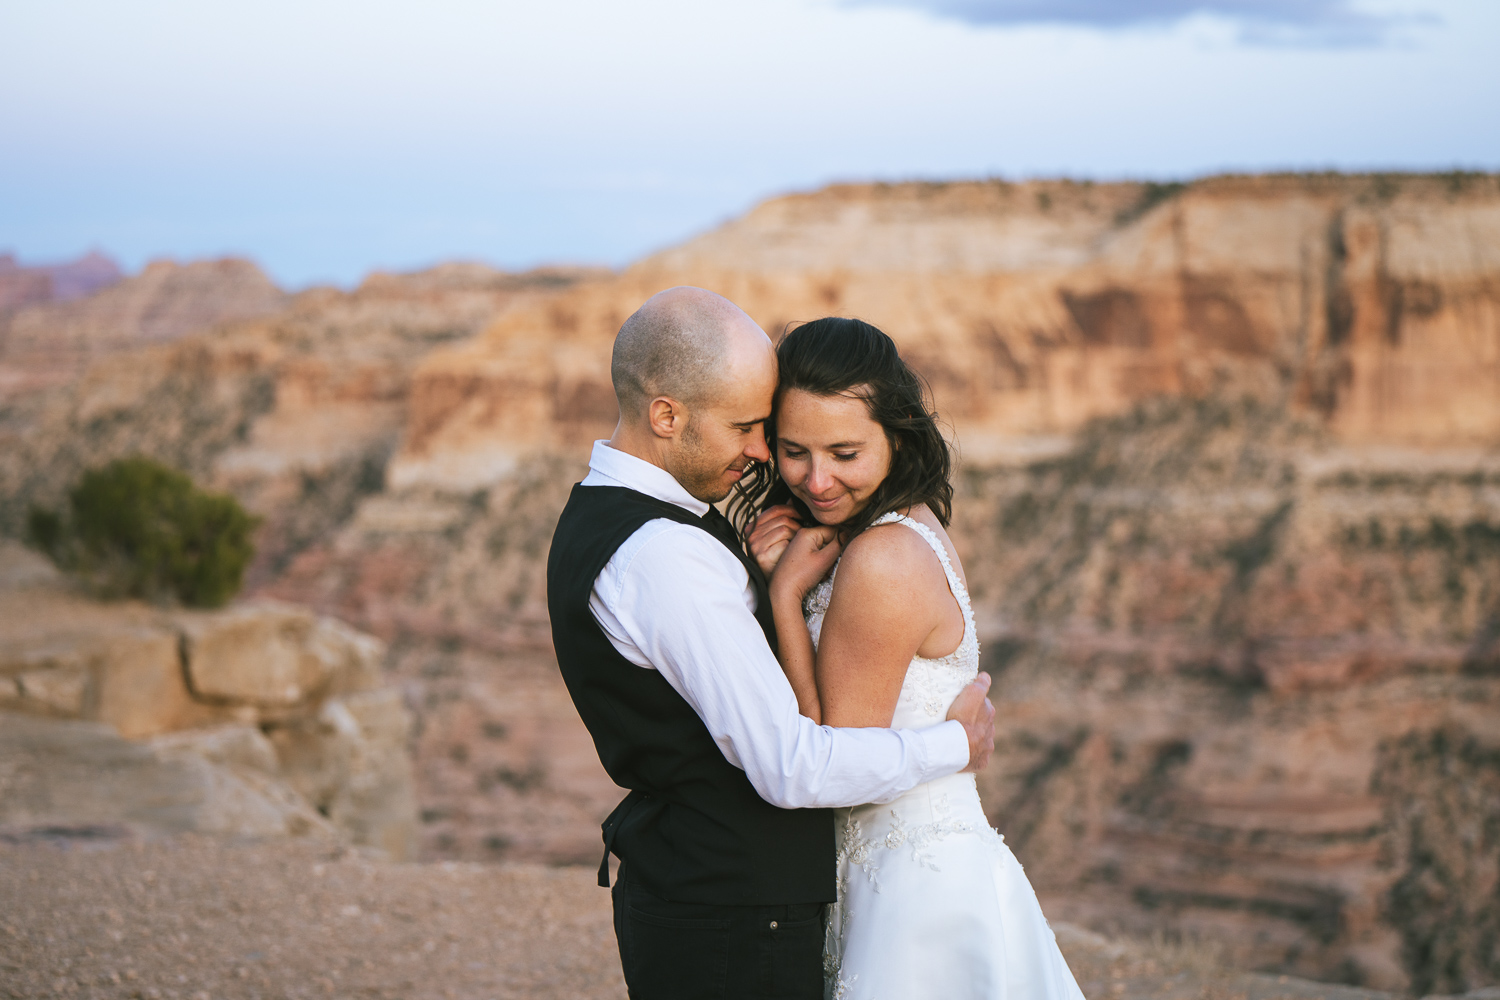 Adventure elopement in the Utah desert